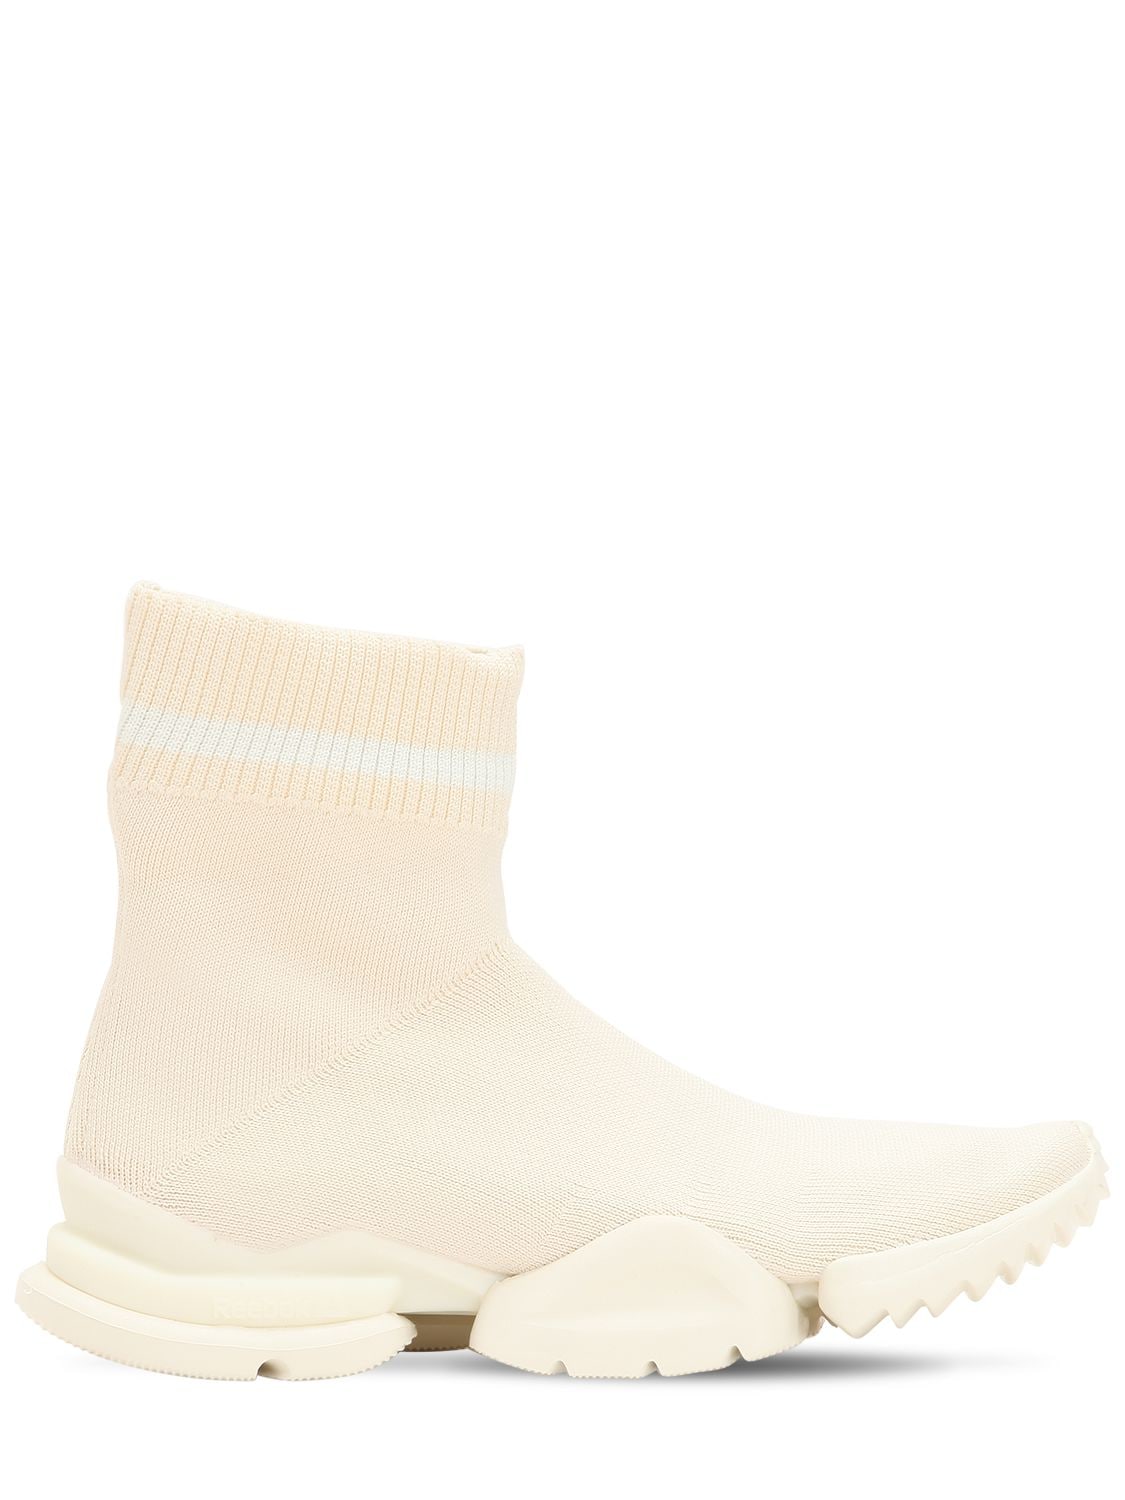 Reebok Knit Sock Sneakers In White